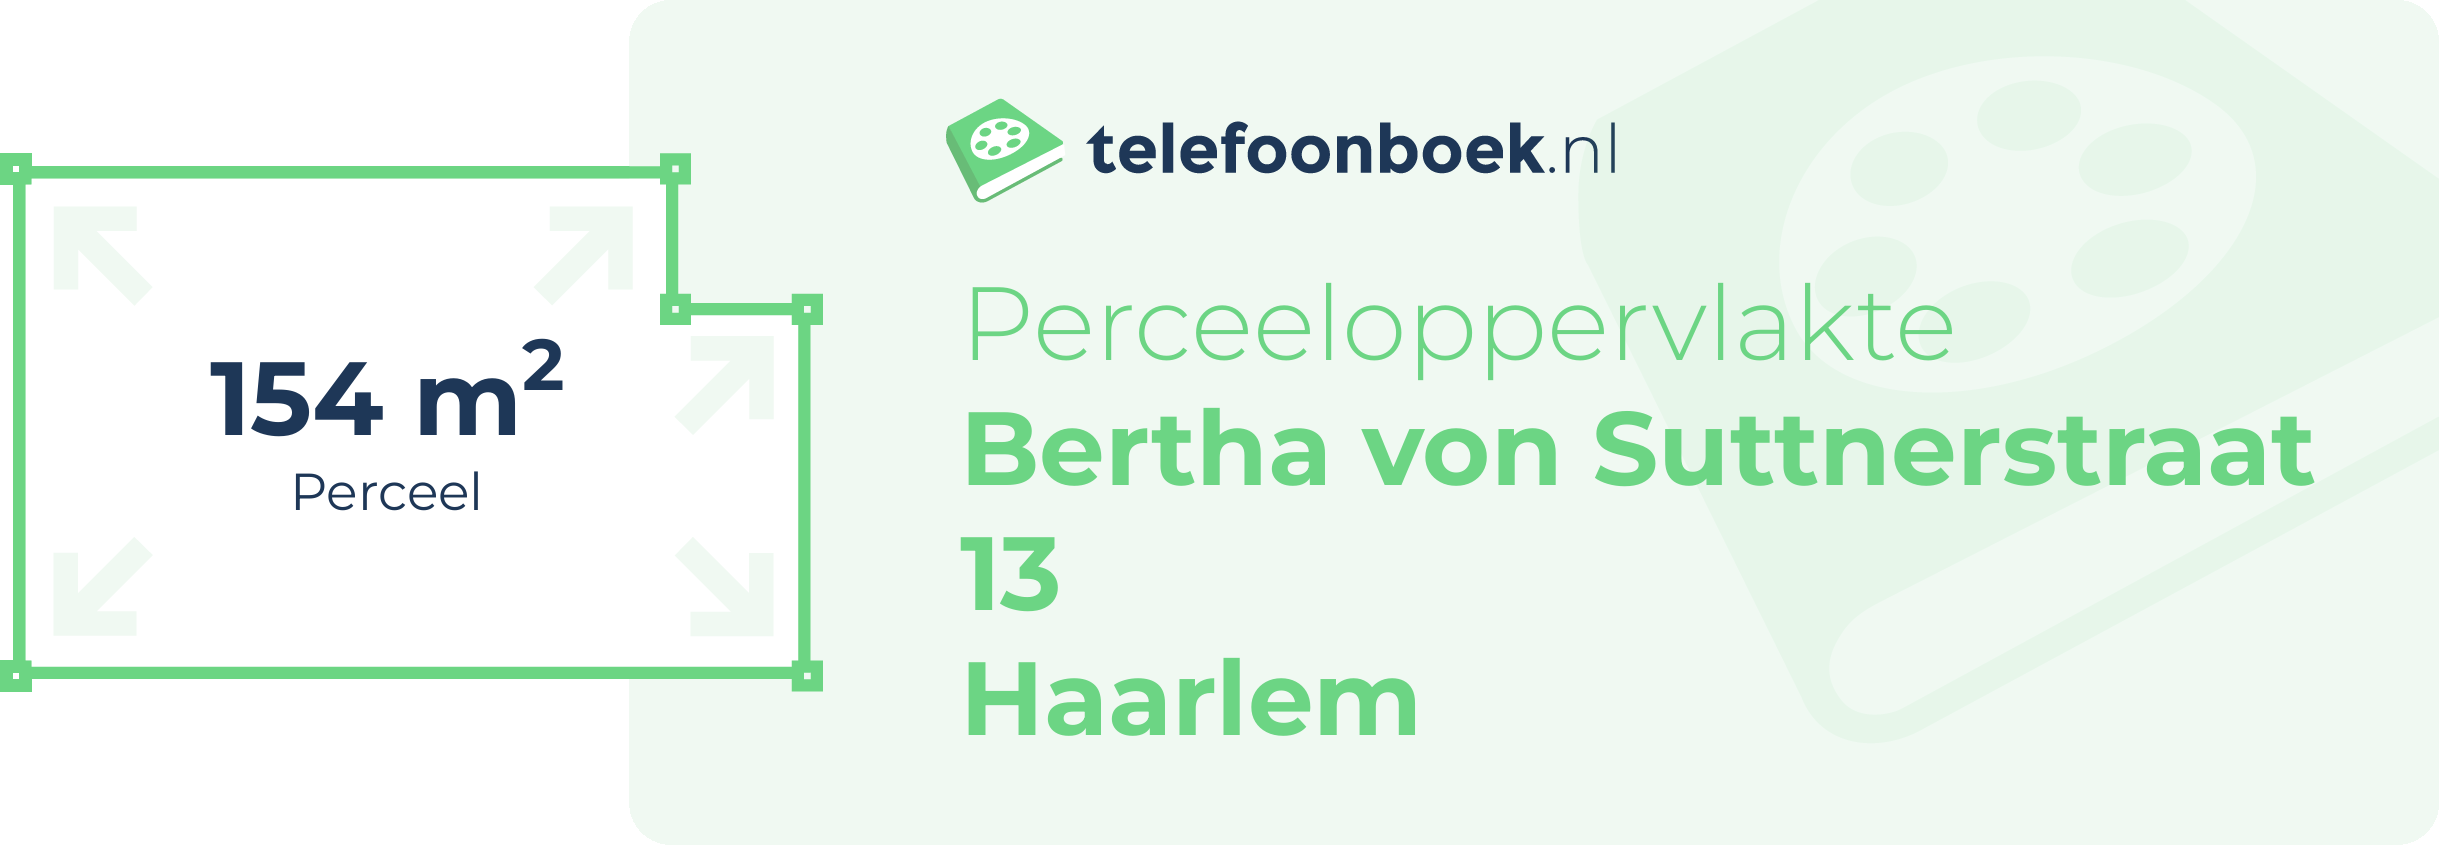 Perceeloppervlakte Bertha Von Suttnerstraat 13 Haarlem